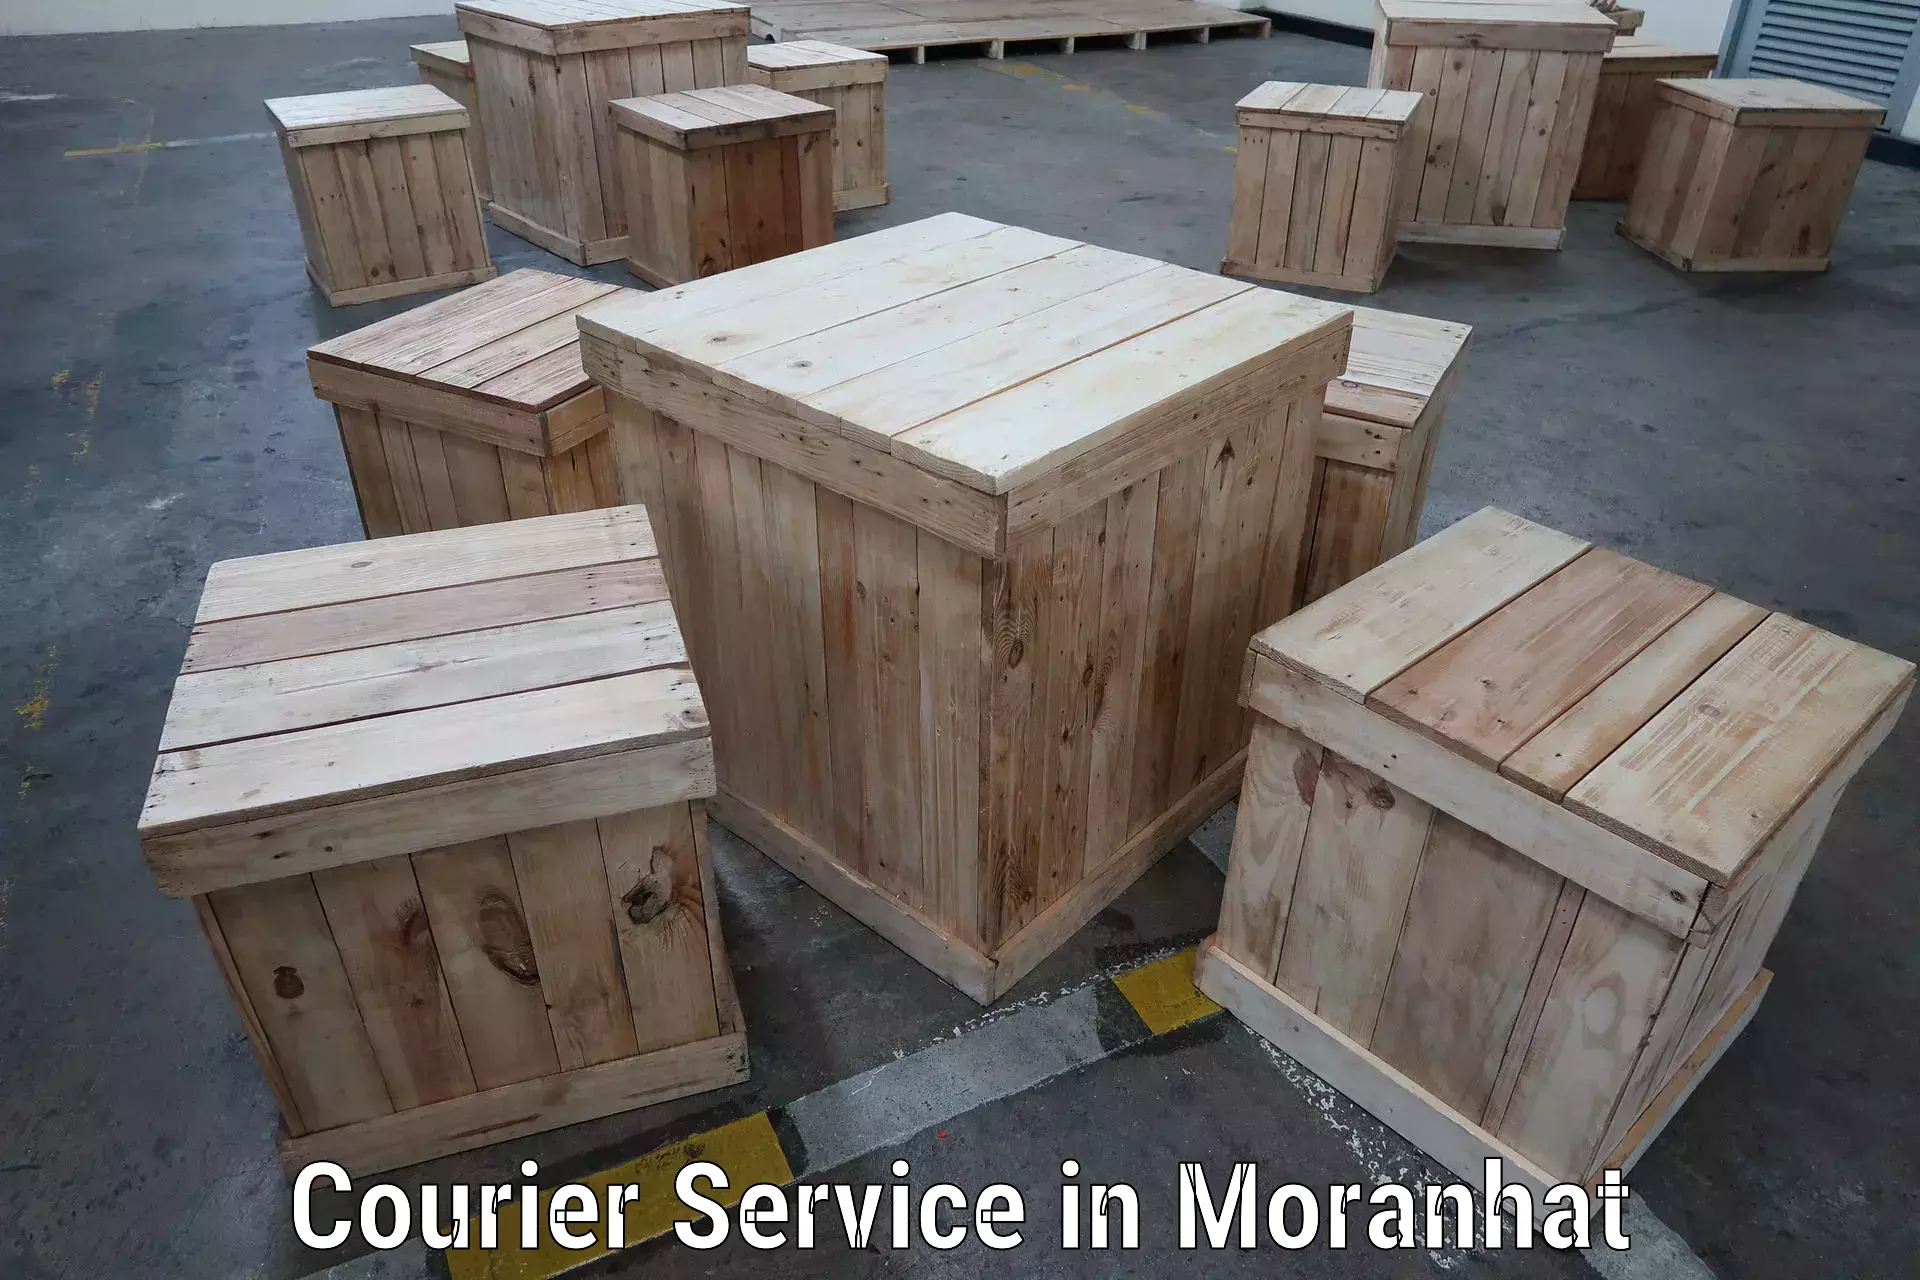 Urgent courier needs in Moranhat